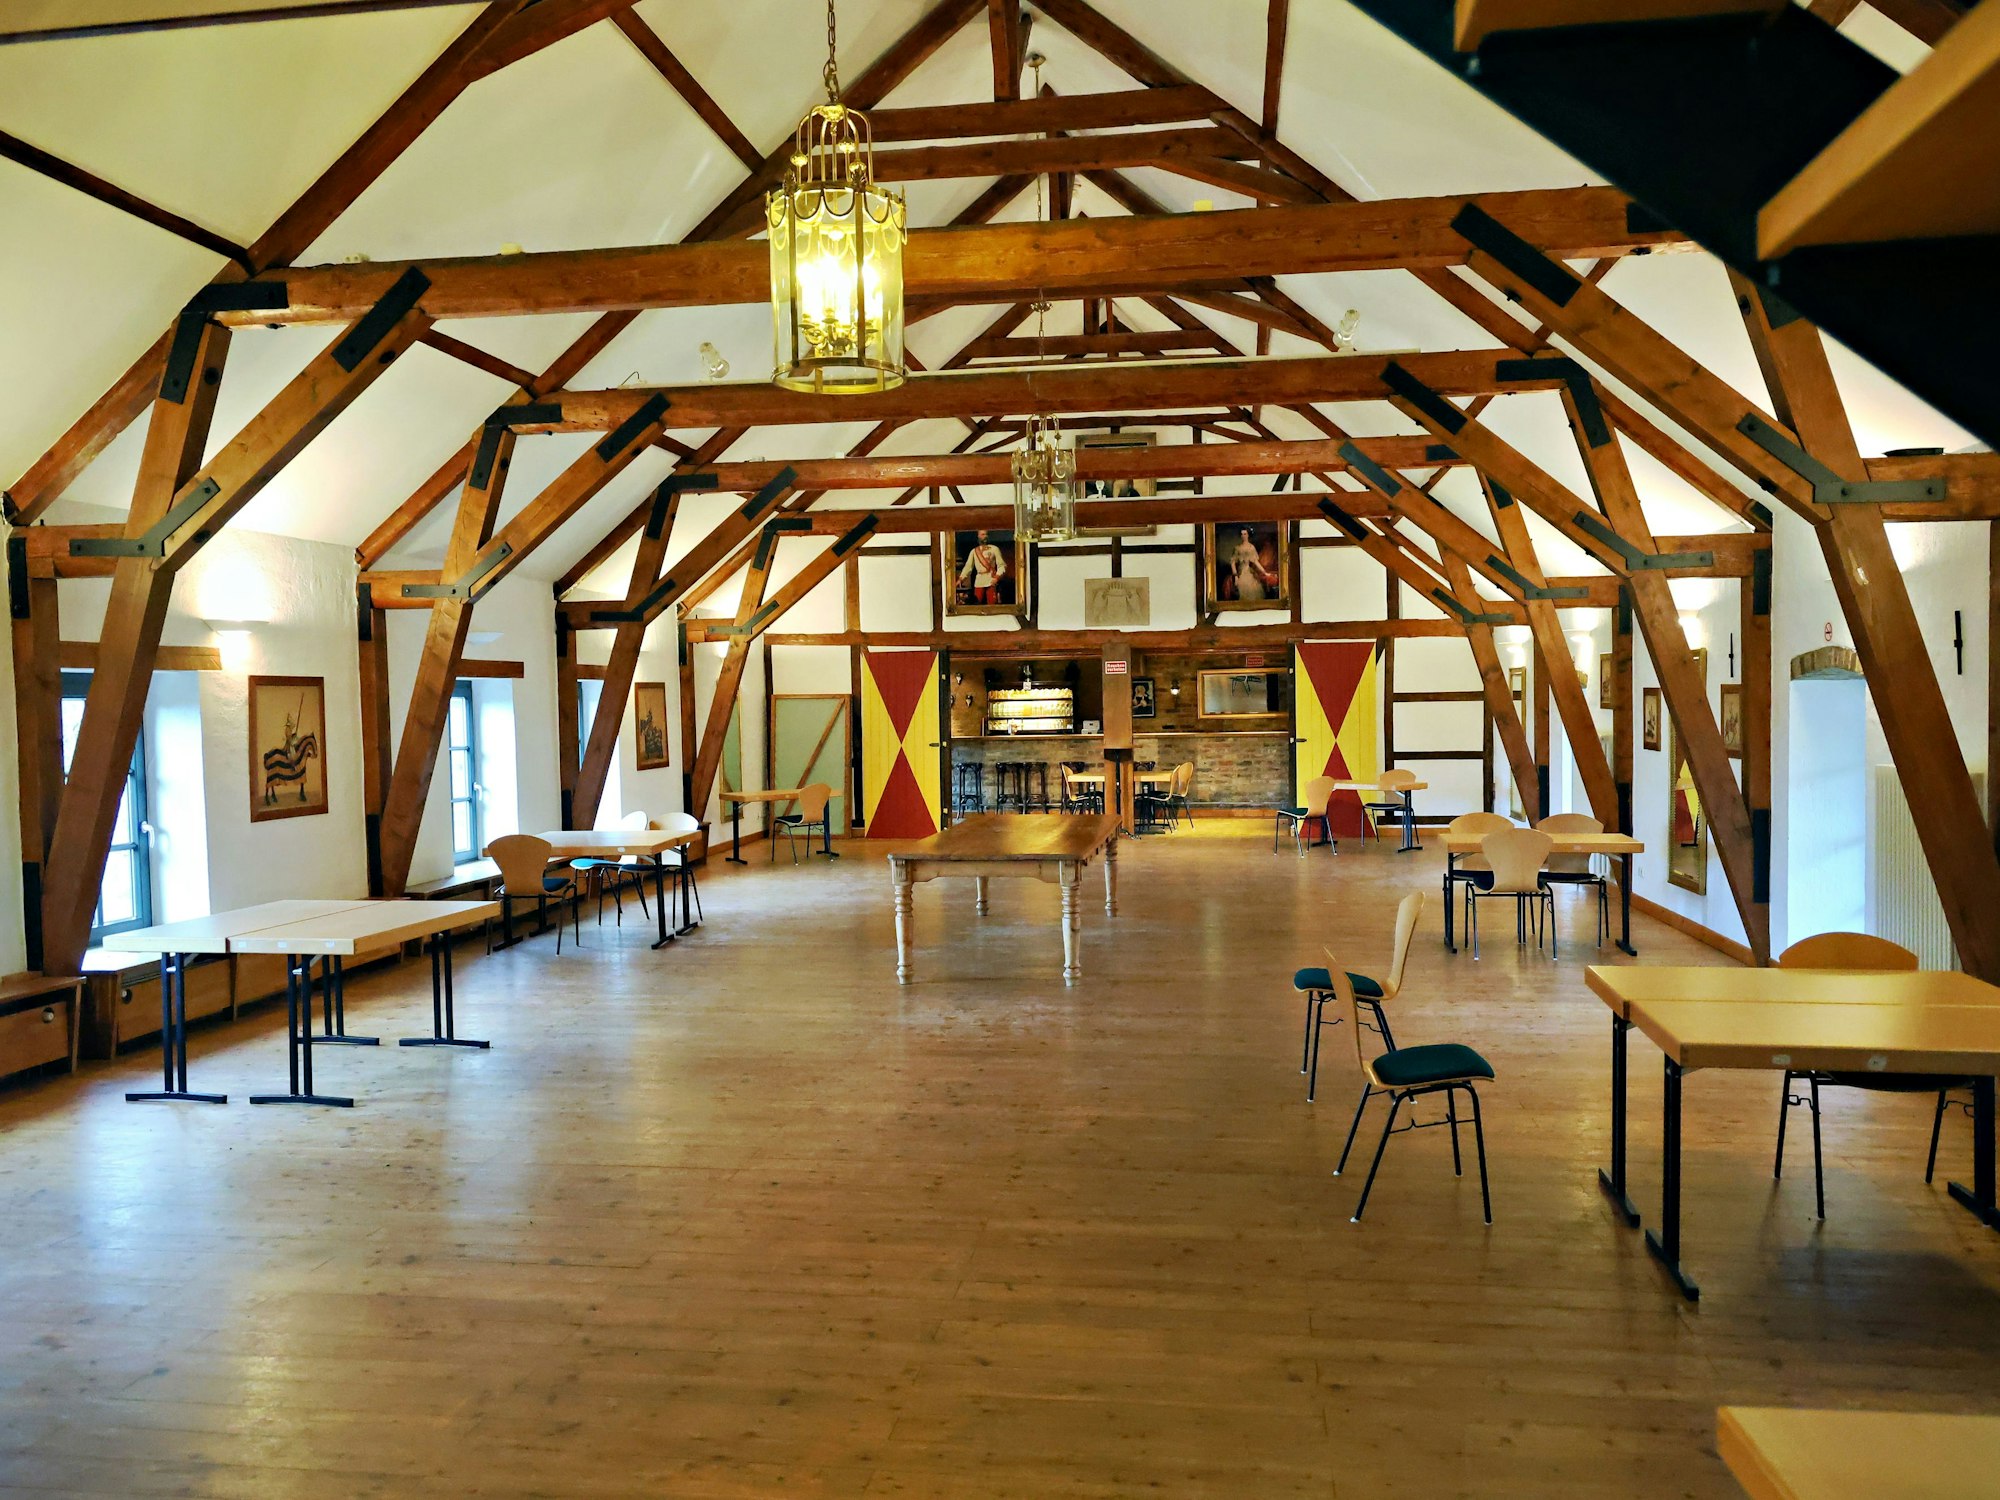 Der Konferenzsaal wird durch die Balkenkonstruktion des Dachstuhls geprägt.